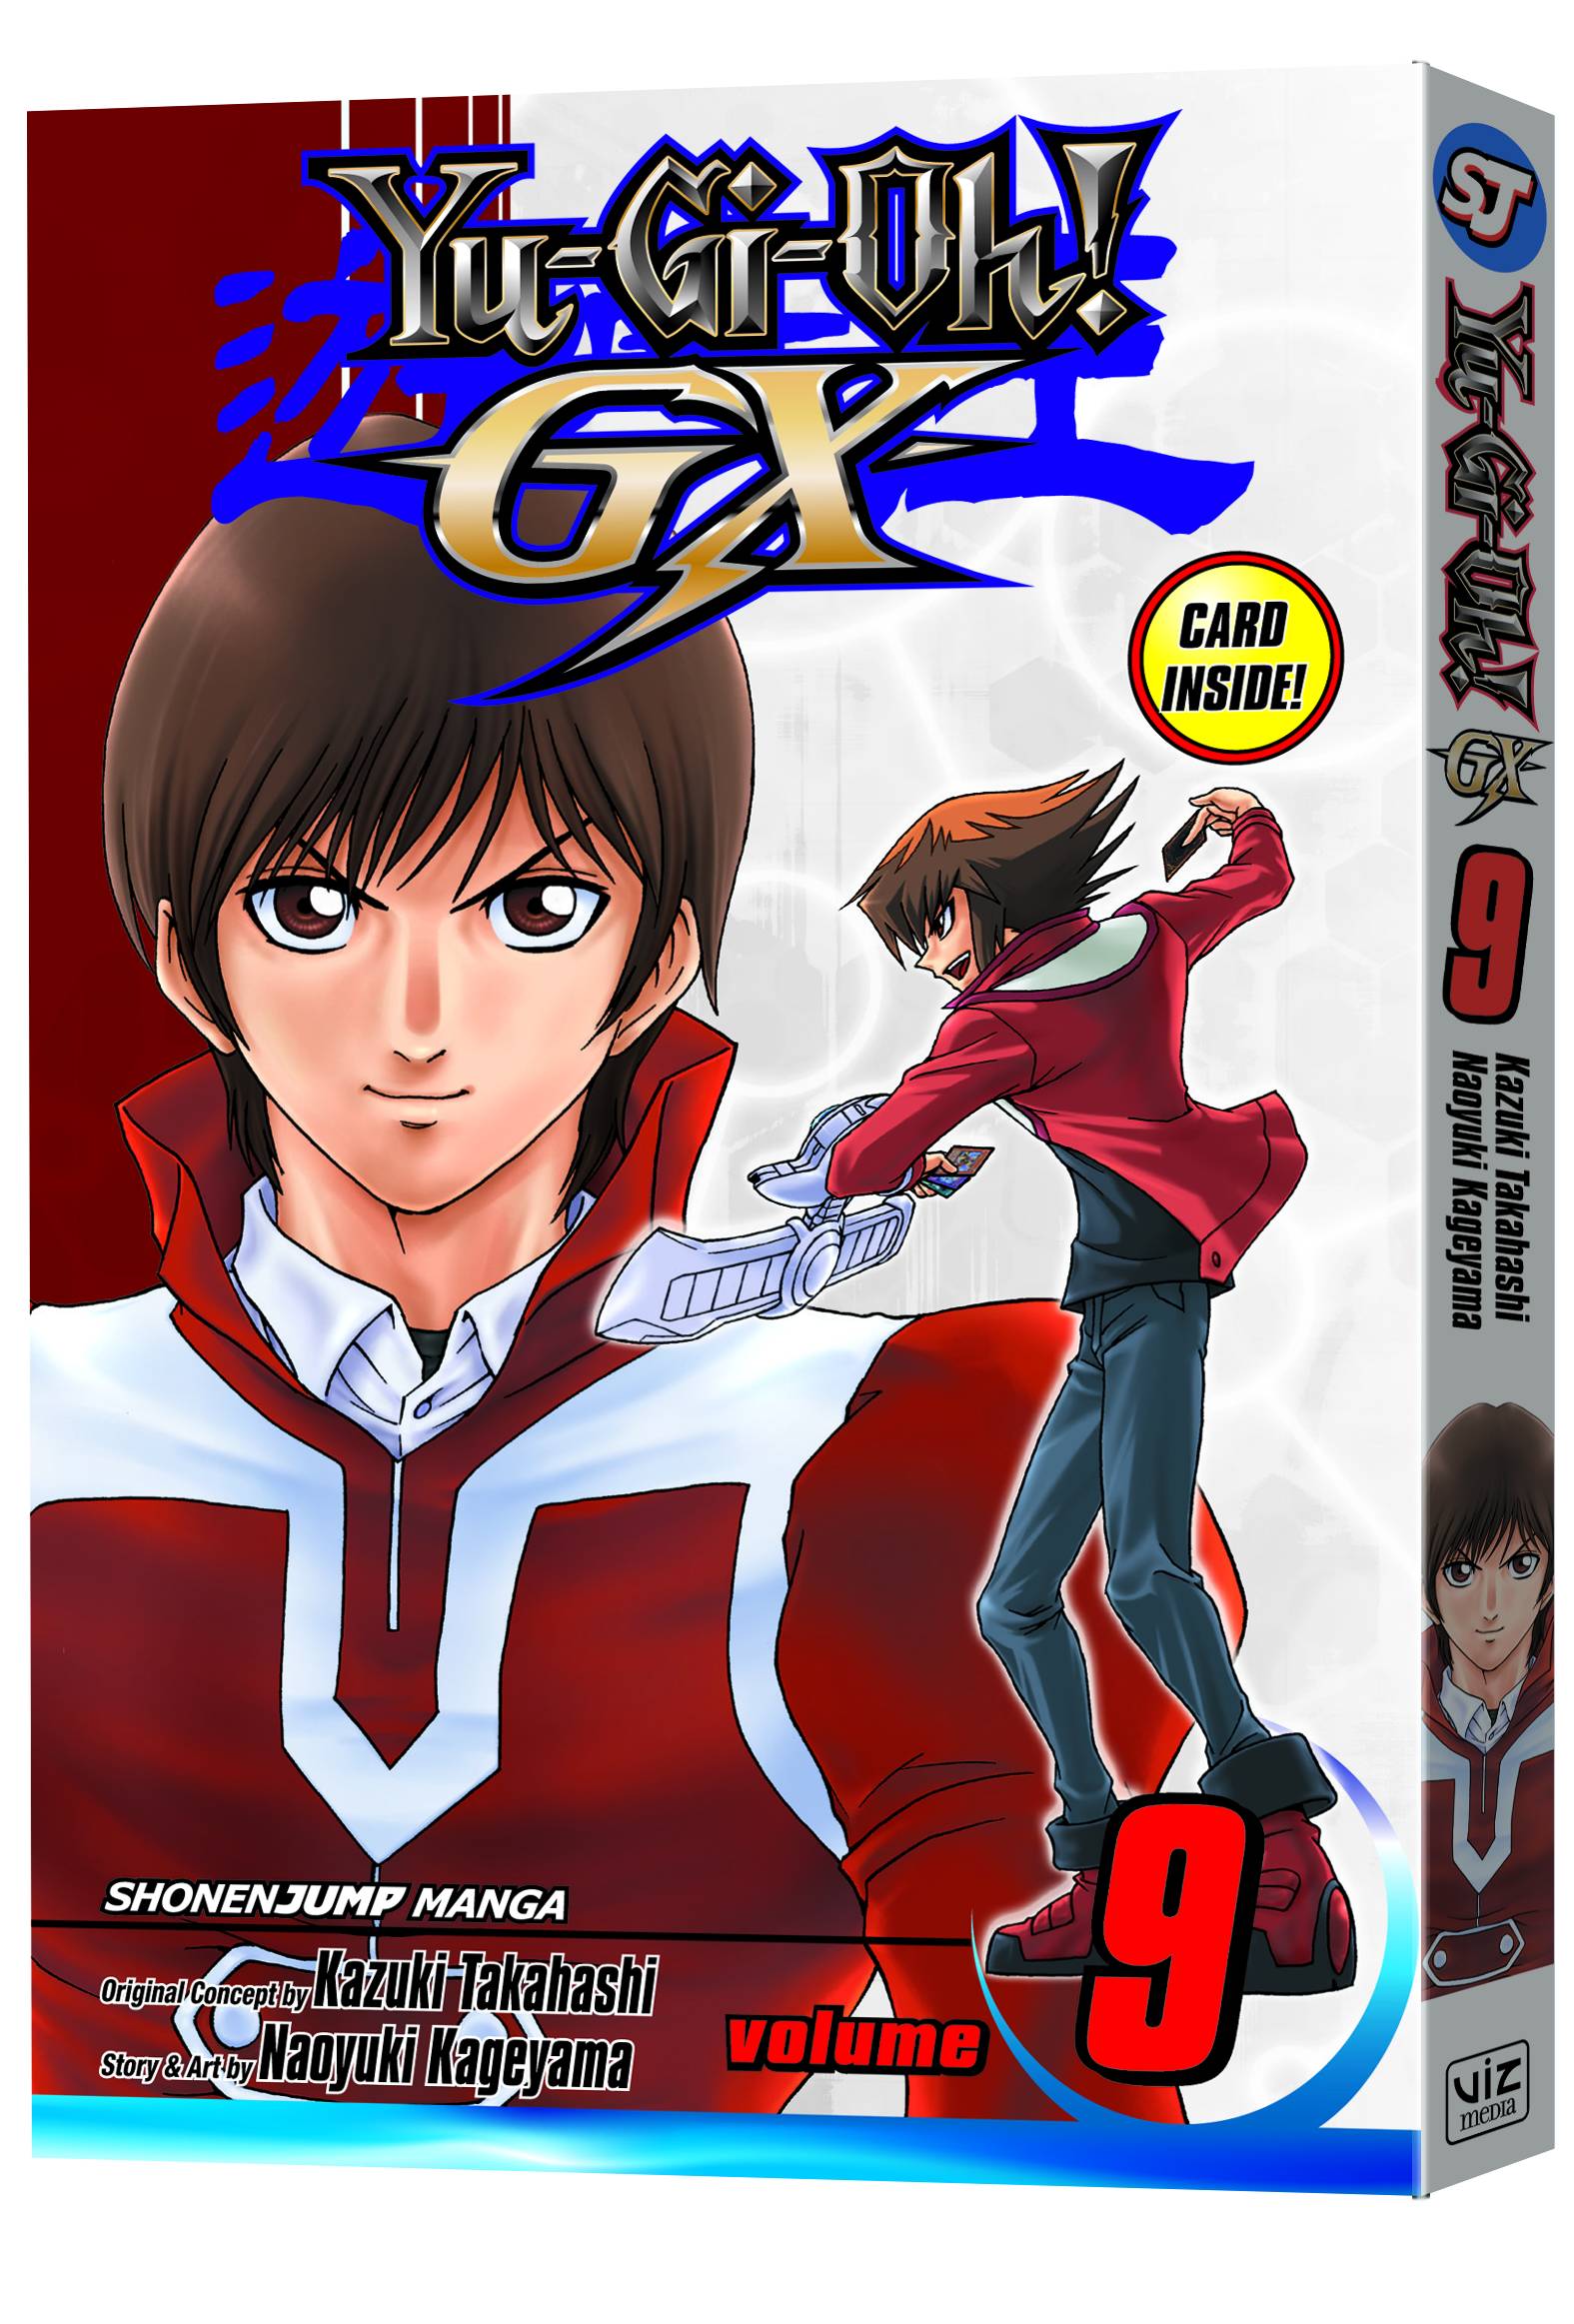 Yu-Gi-Oh! Gx Manga Volume 9